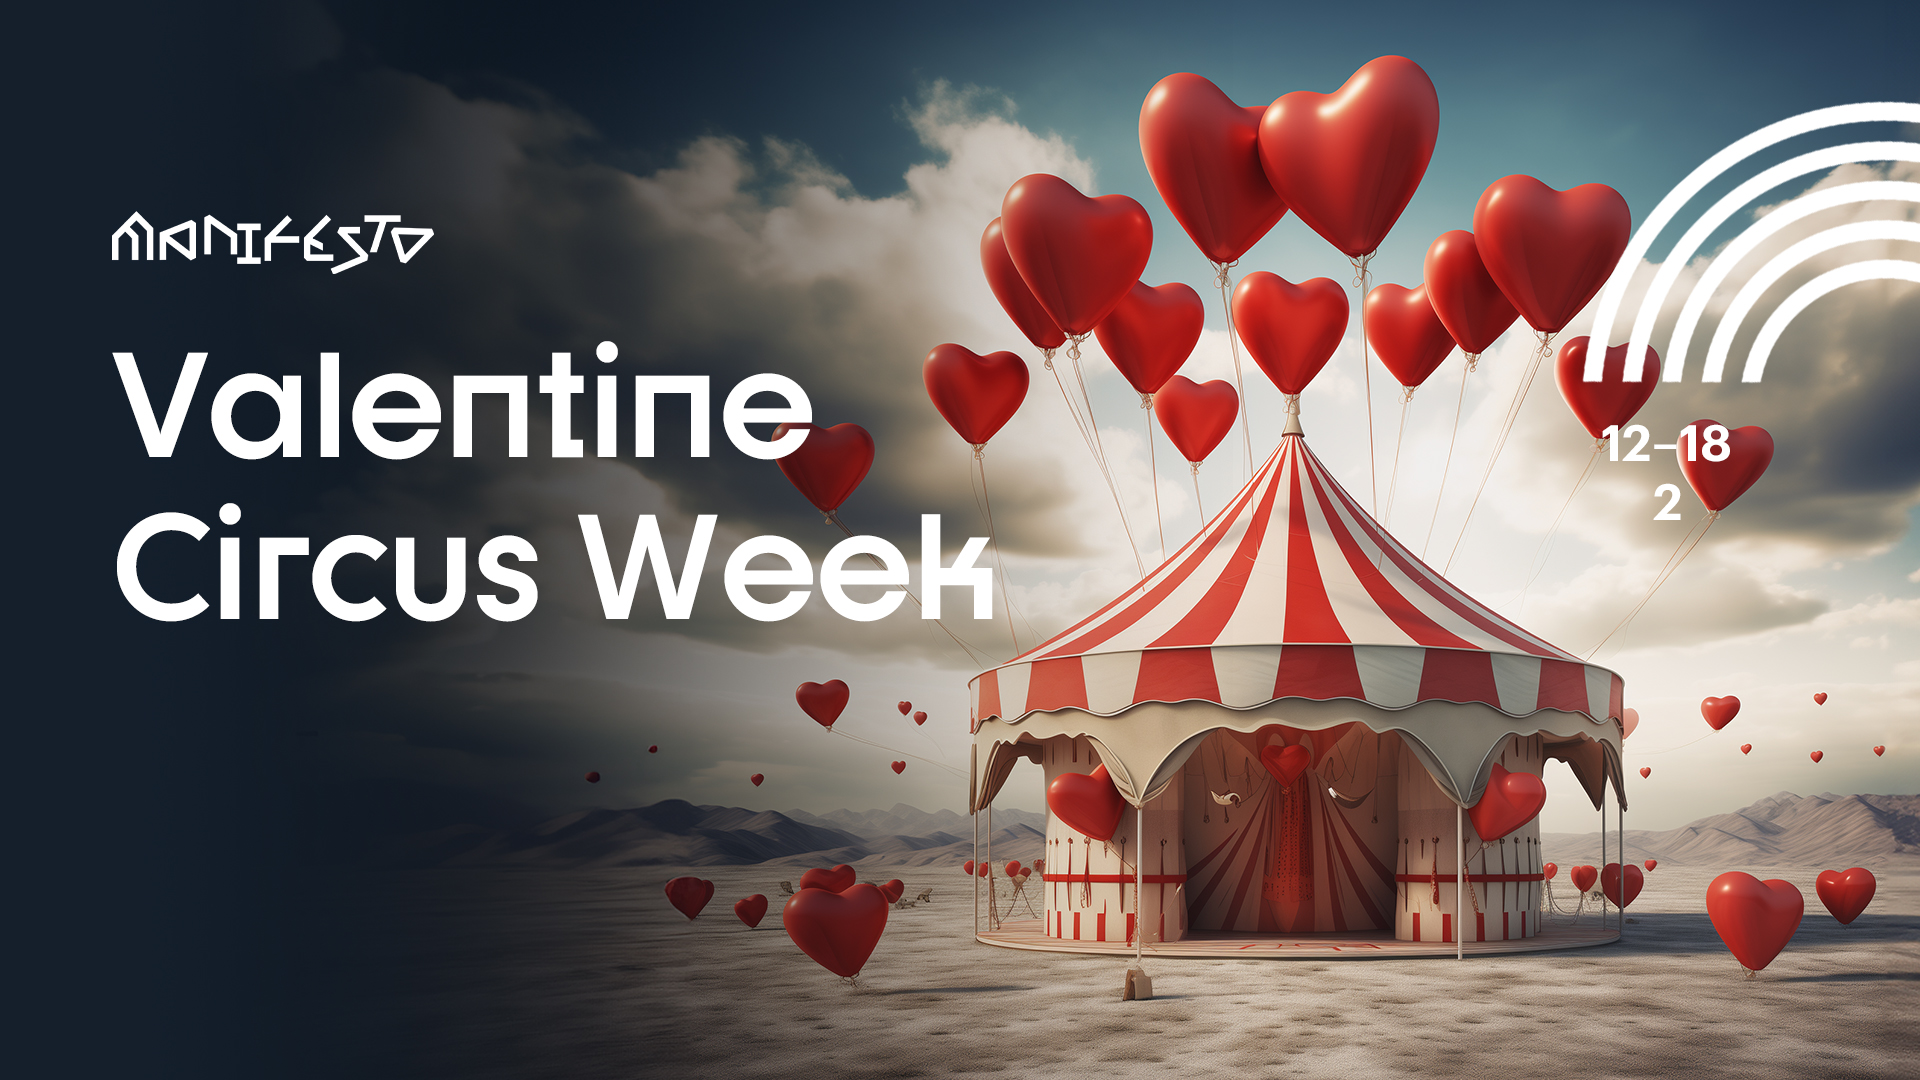 Valentine Circus Week